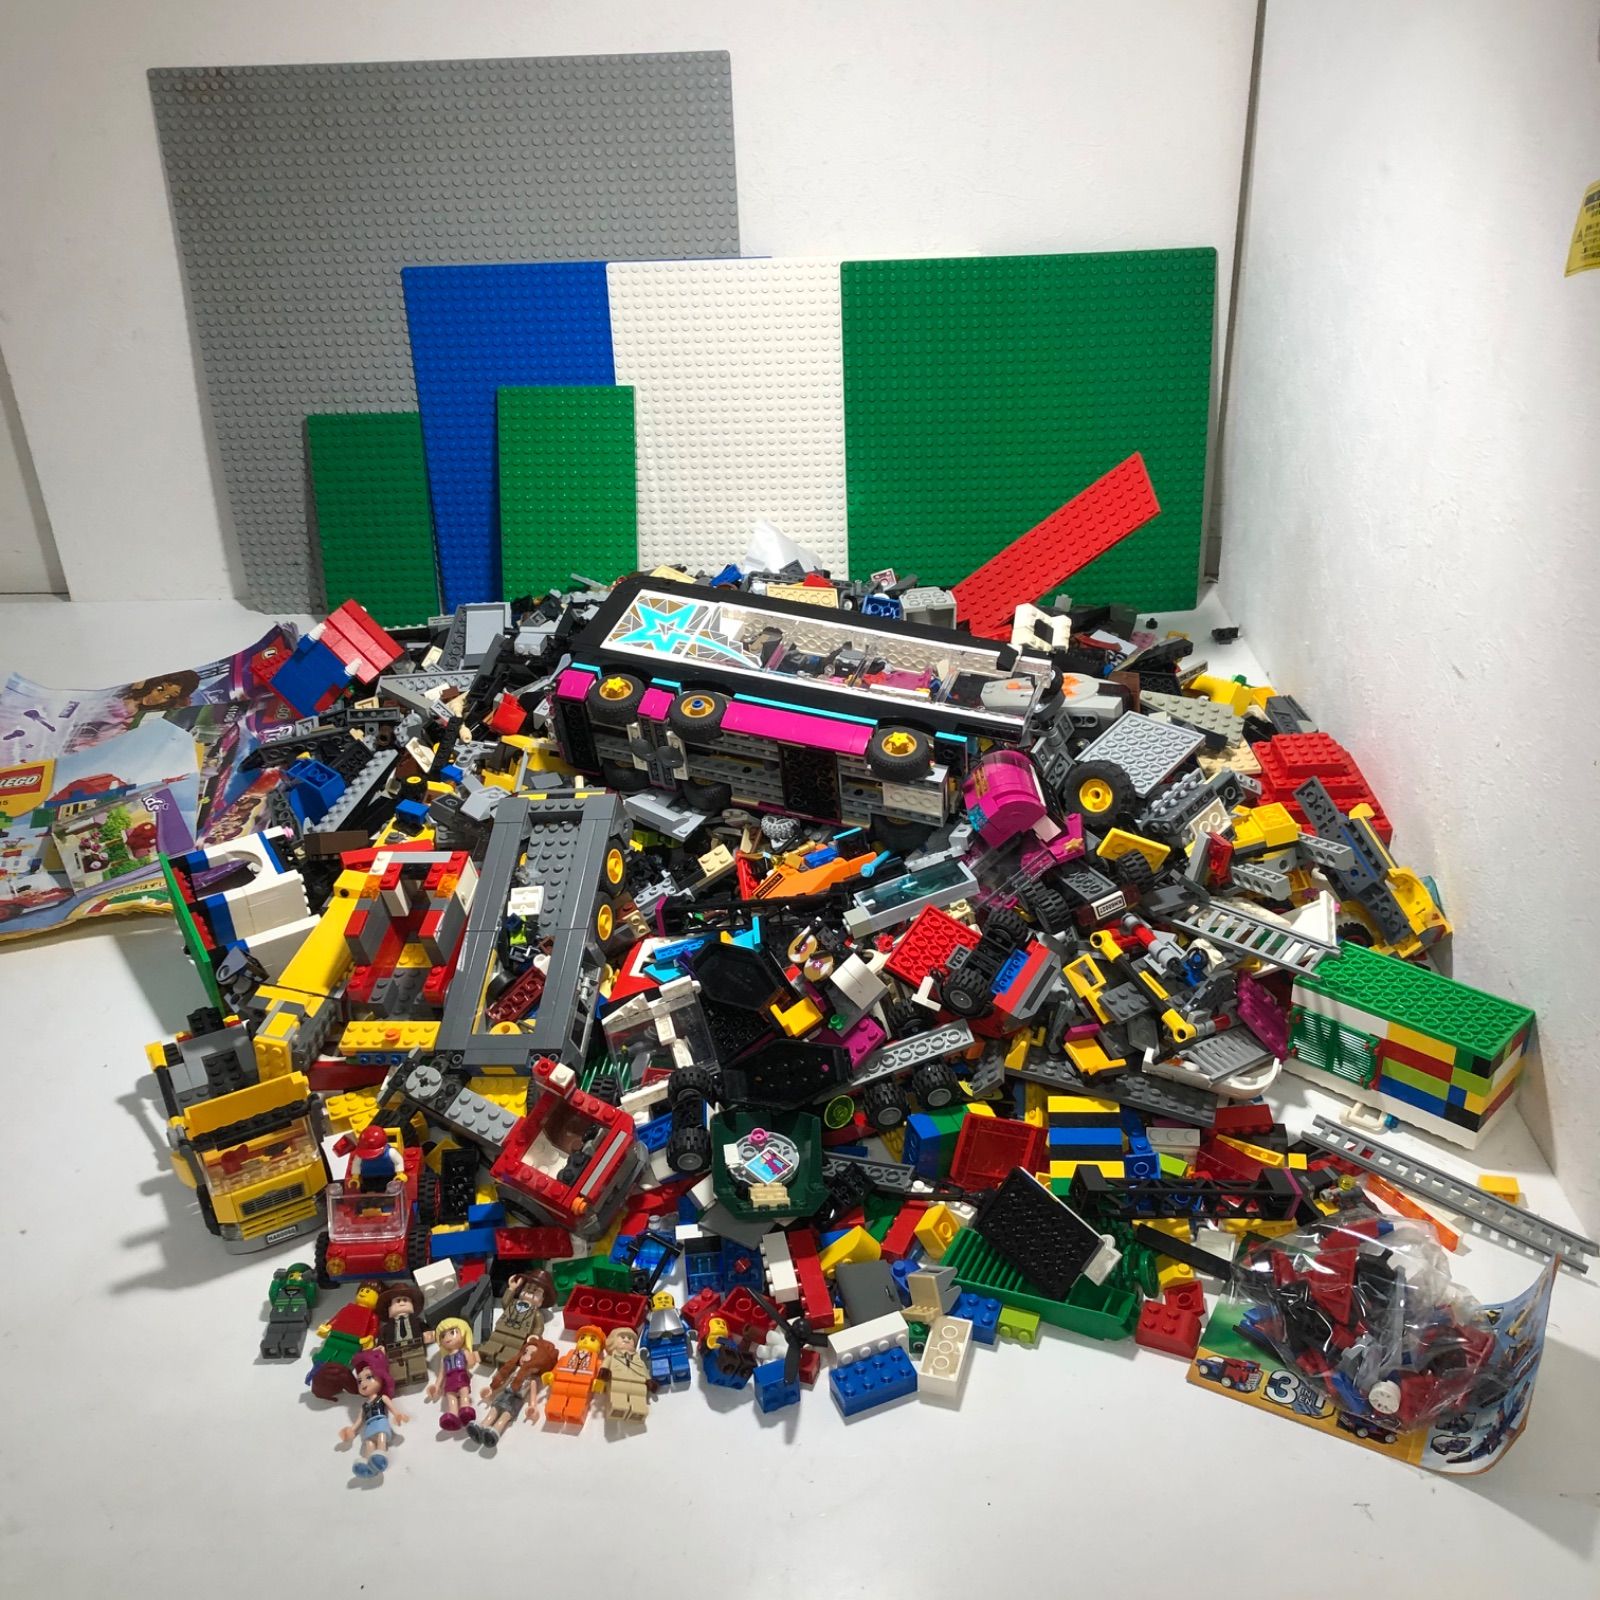 ☆LEGO レゴ ブロック レゴフレンズ 基礎版、フィギュア、車 など